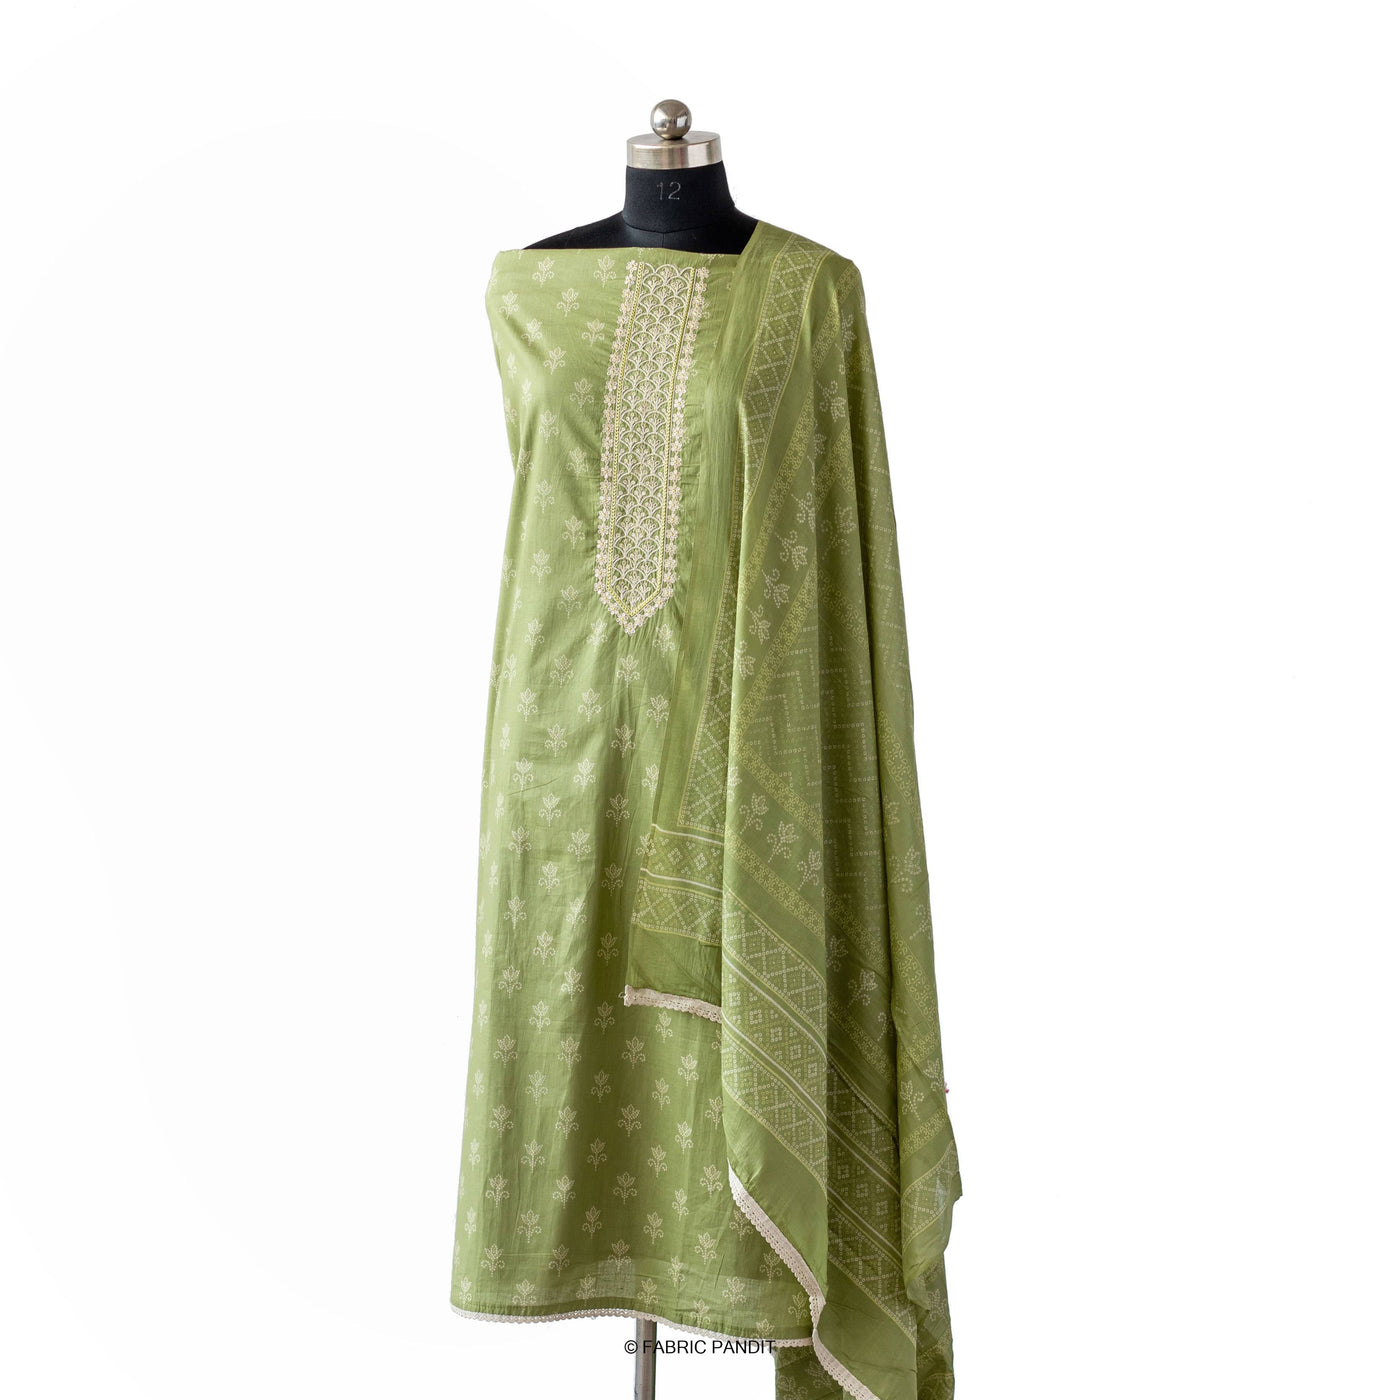 Fabric Pandit Light Green Geometric Floral Earthen Bandhani print pure Cotton Santin Unstitched Suit